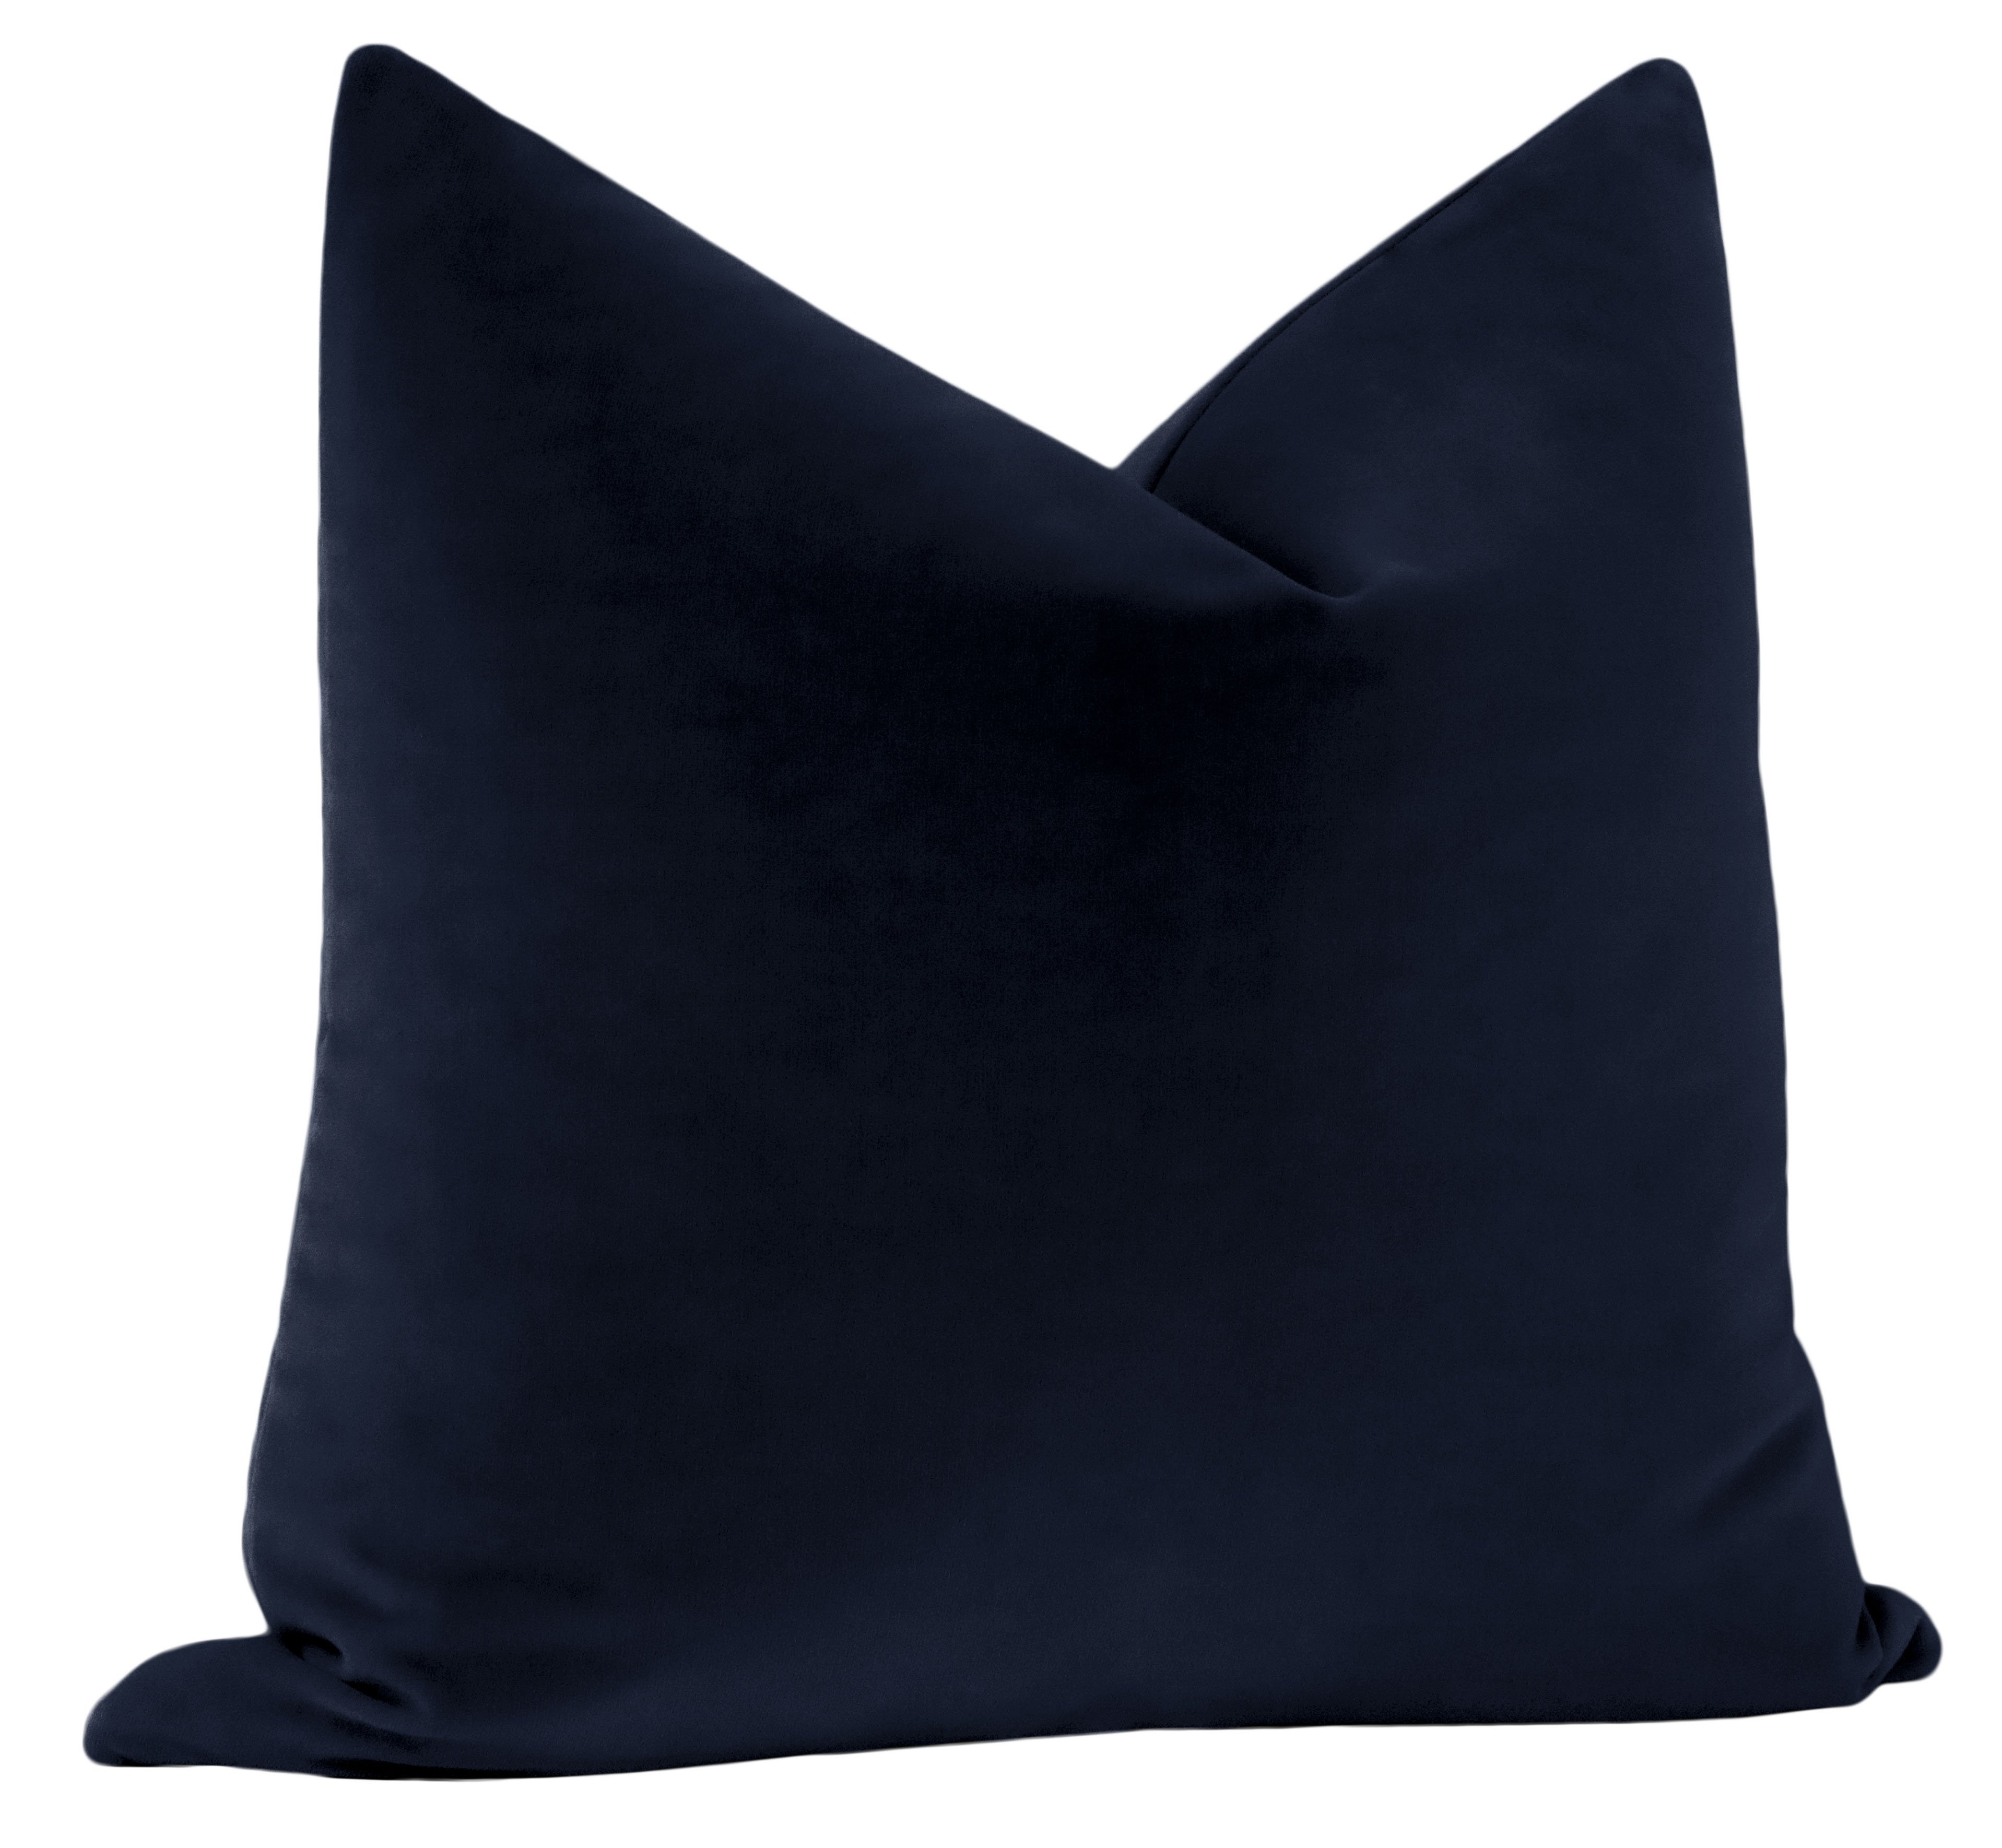 Studio Velvet Throw Pillow Cover, Navy Blue, 20" x 20" - Image 2